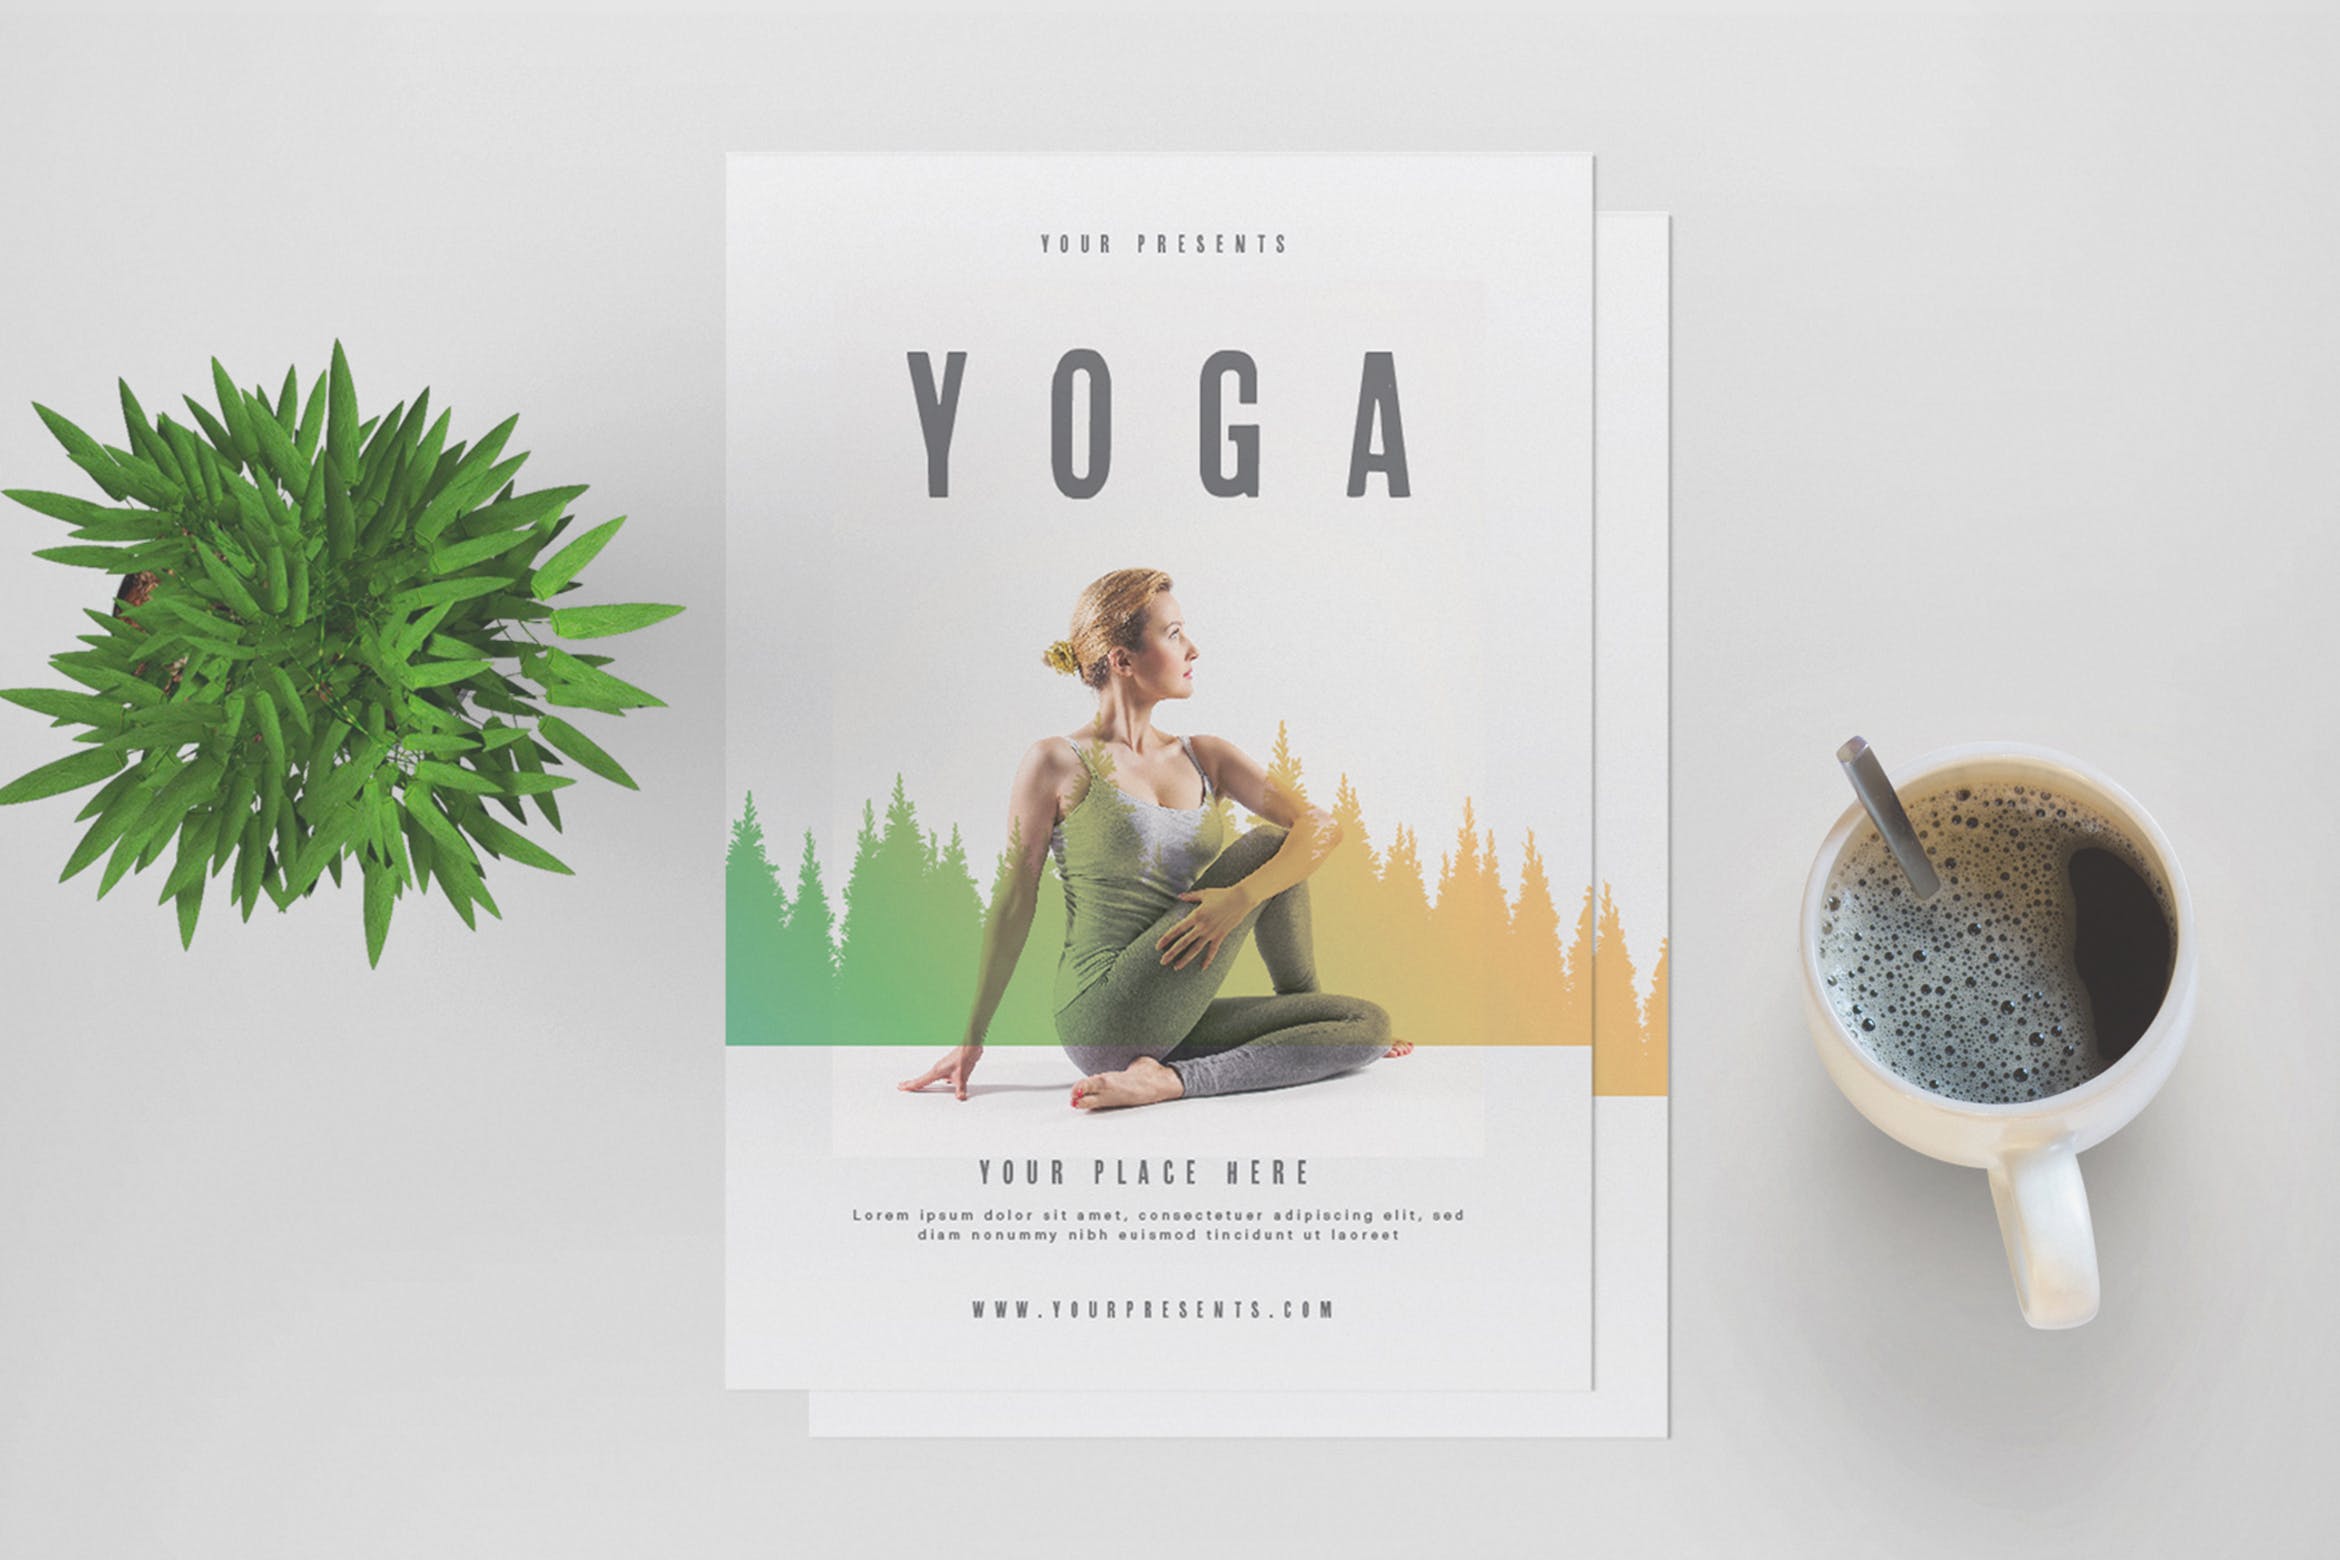 瑜伽养生运动推广活动宣传海报传单设计模板 Yoga Flyer插图